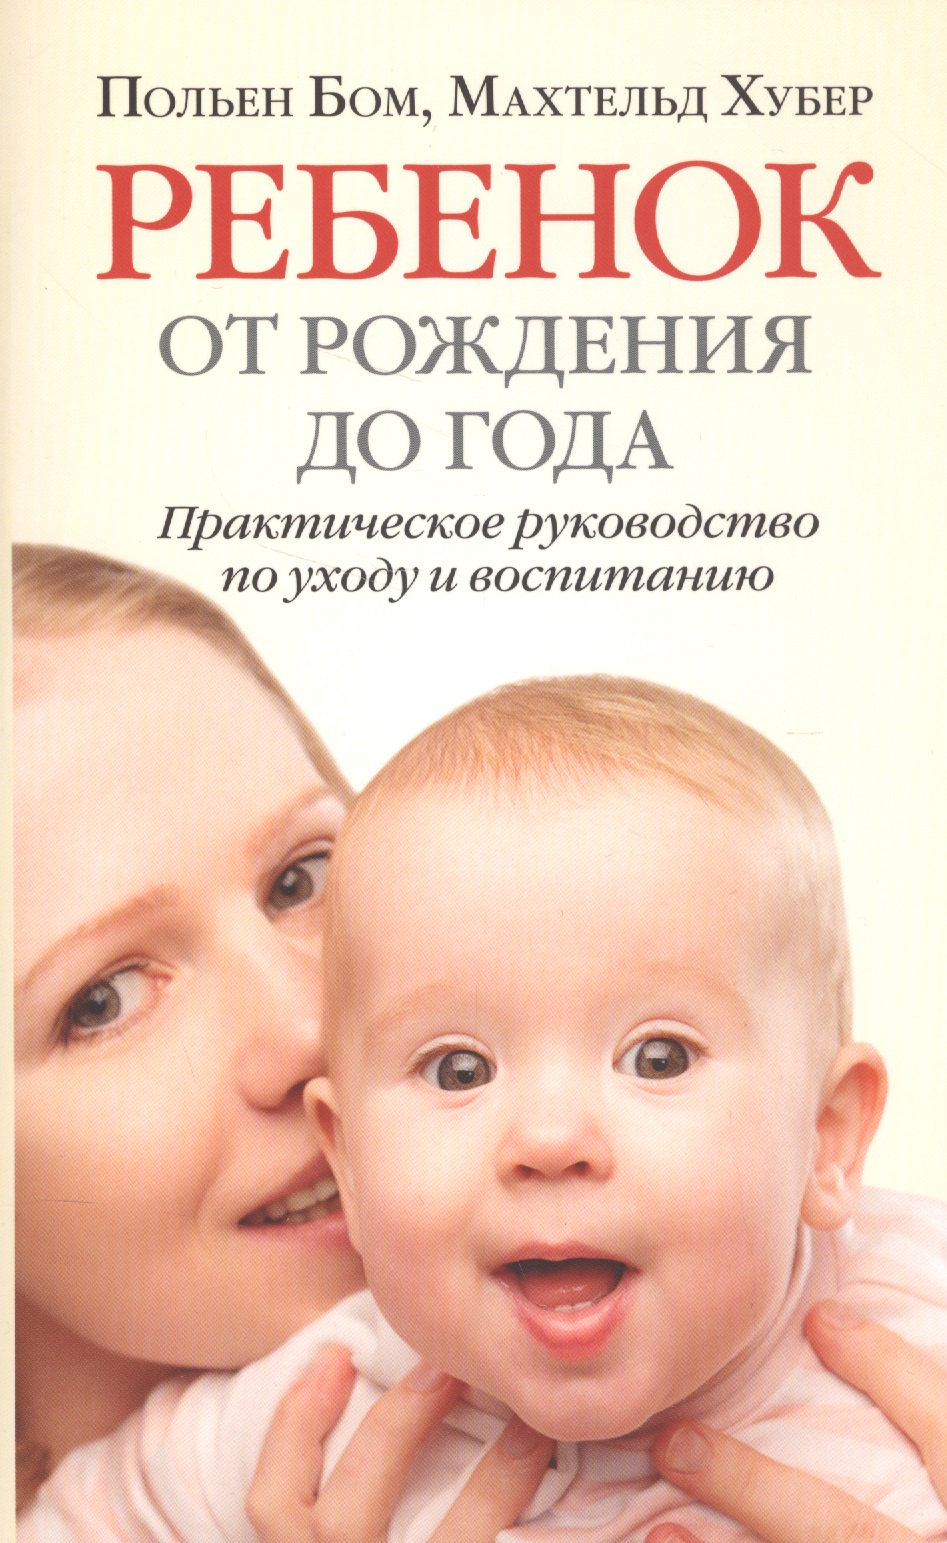 мама папа я ребенок от рождения до года книга для родителей Бом Польен Ребенок от рождения до года